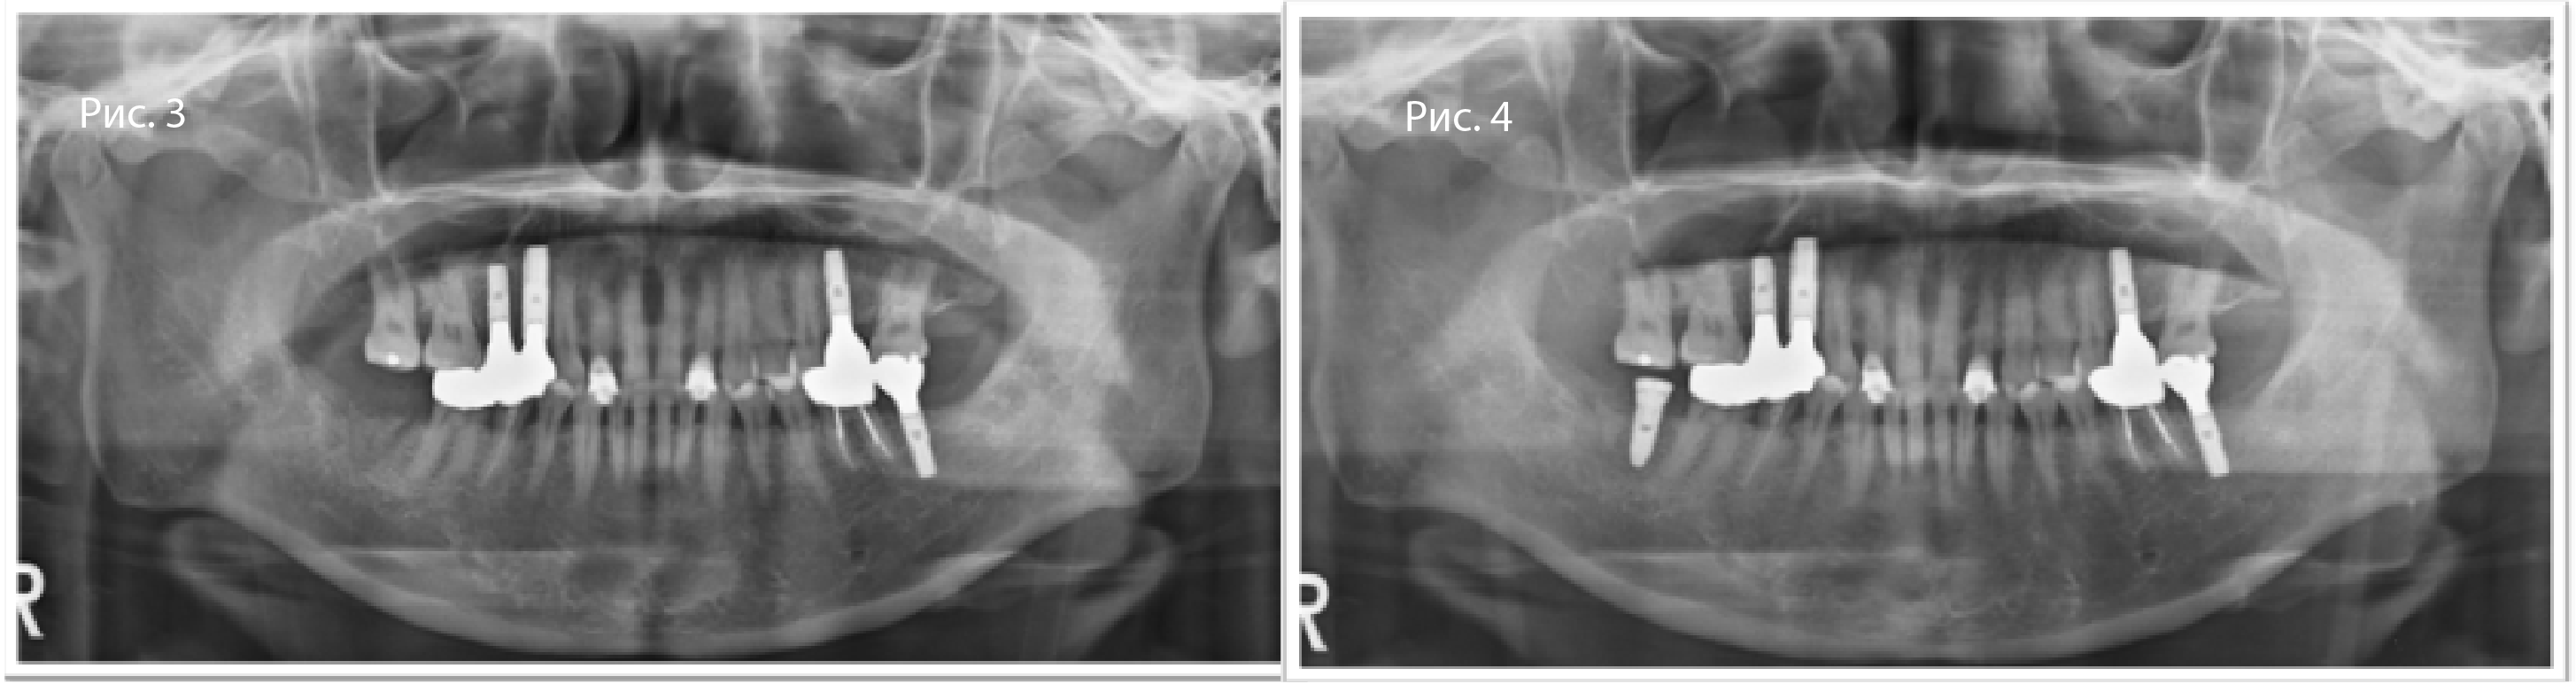 Рис. 3. Панорамная рентгенограмма после фиксации итоговой реставрации (с момента имплантации прошло 2 мес.)